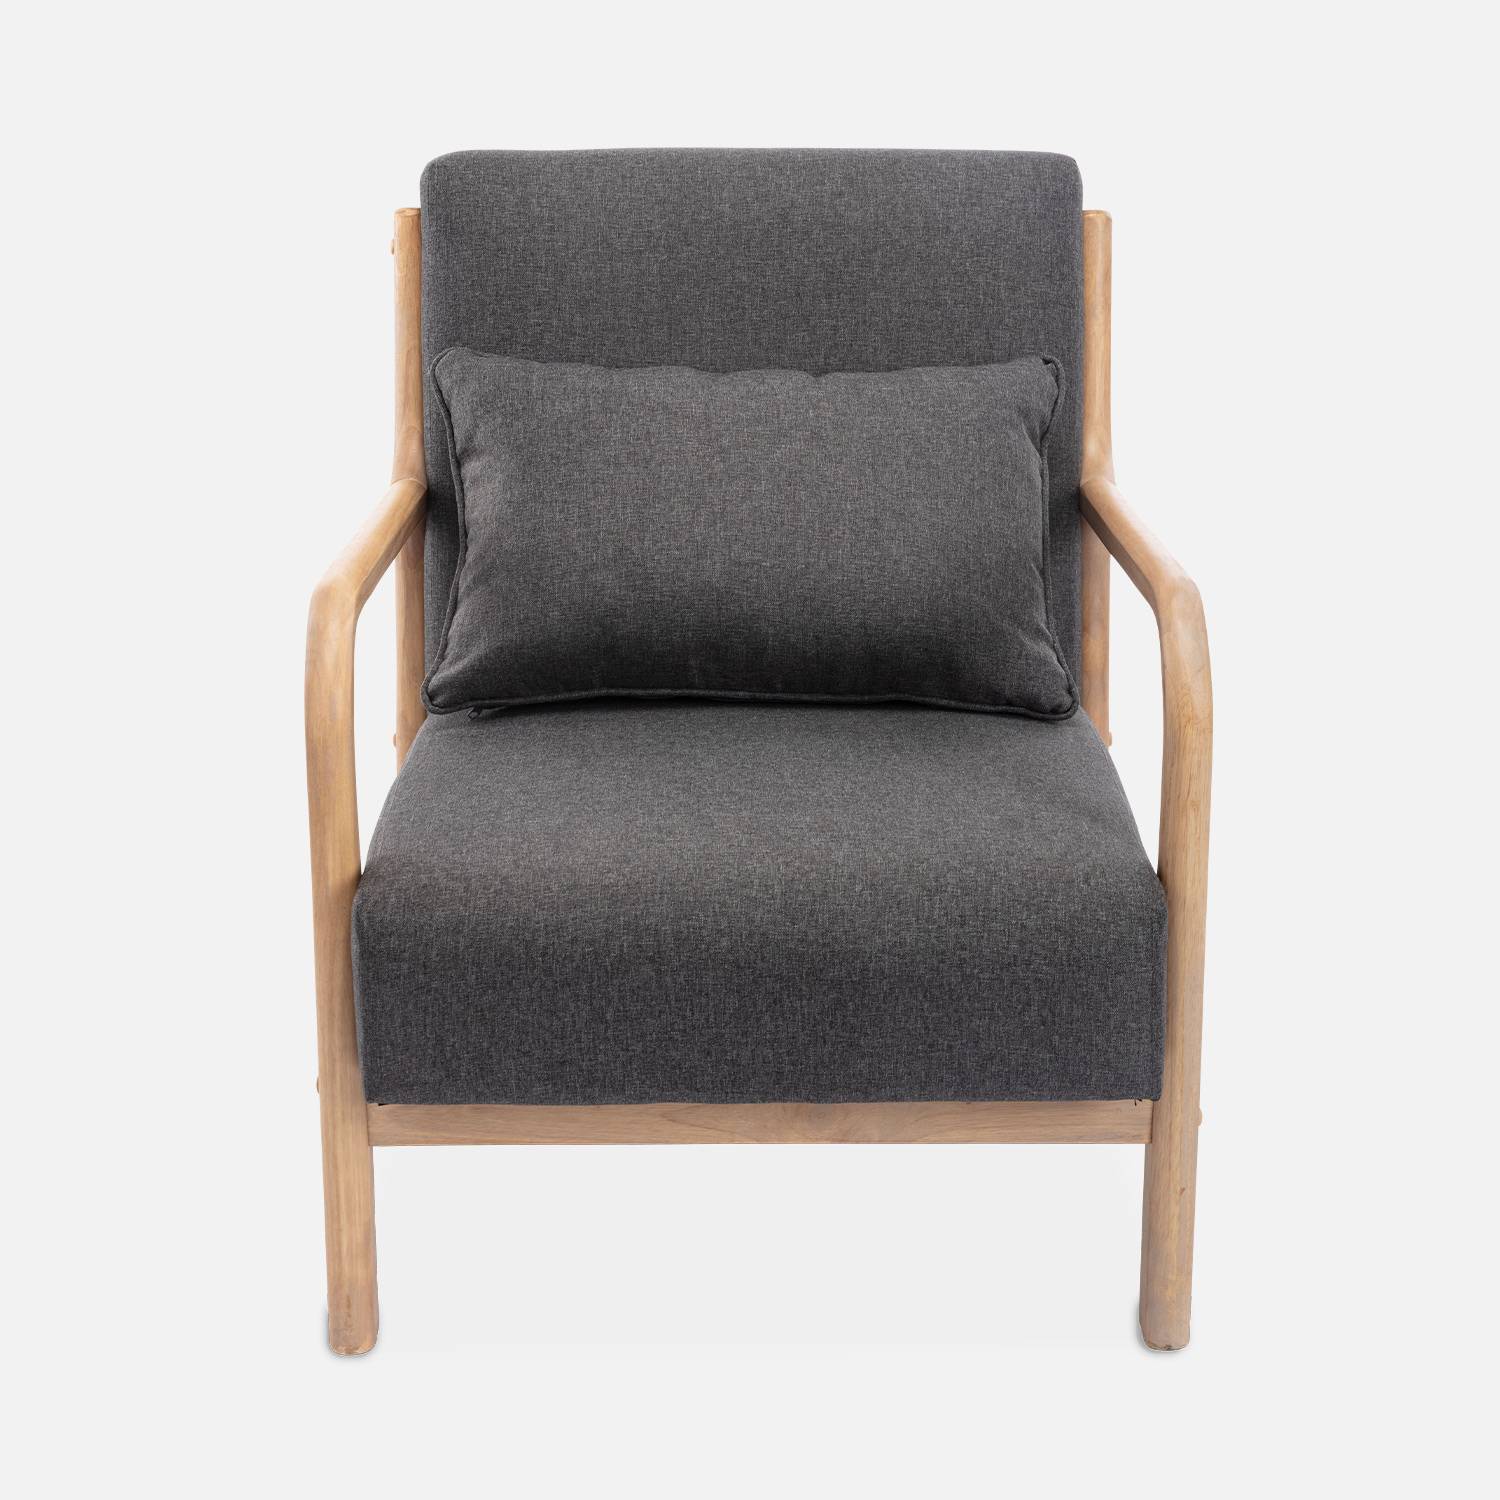 Poltrona de design em madeira e tecido, 1 assento direito fixo, pernas em bússola escandinavas, estrutura em madeira maciça, assento confortável, cinzento escuro Photo5